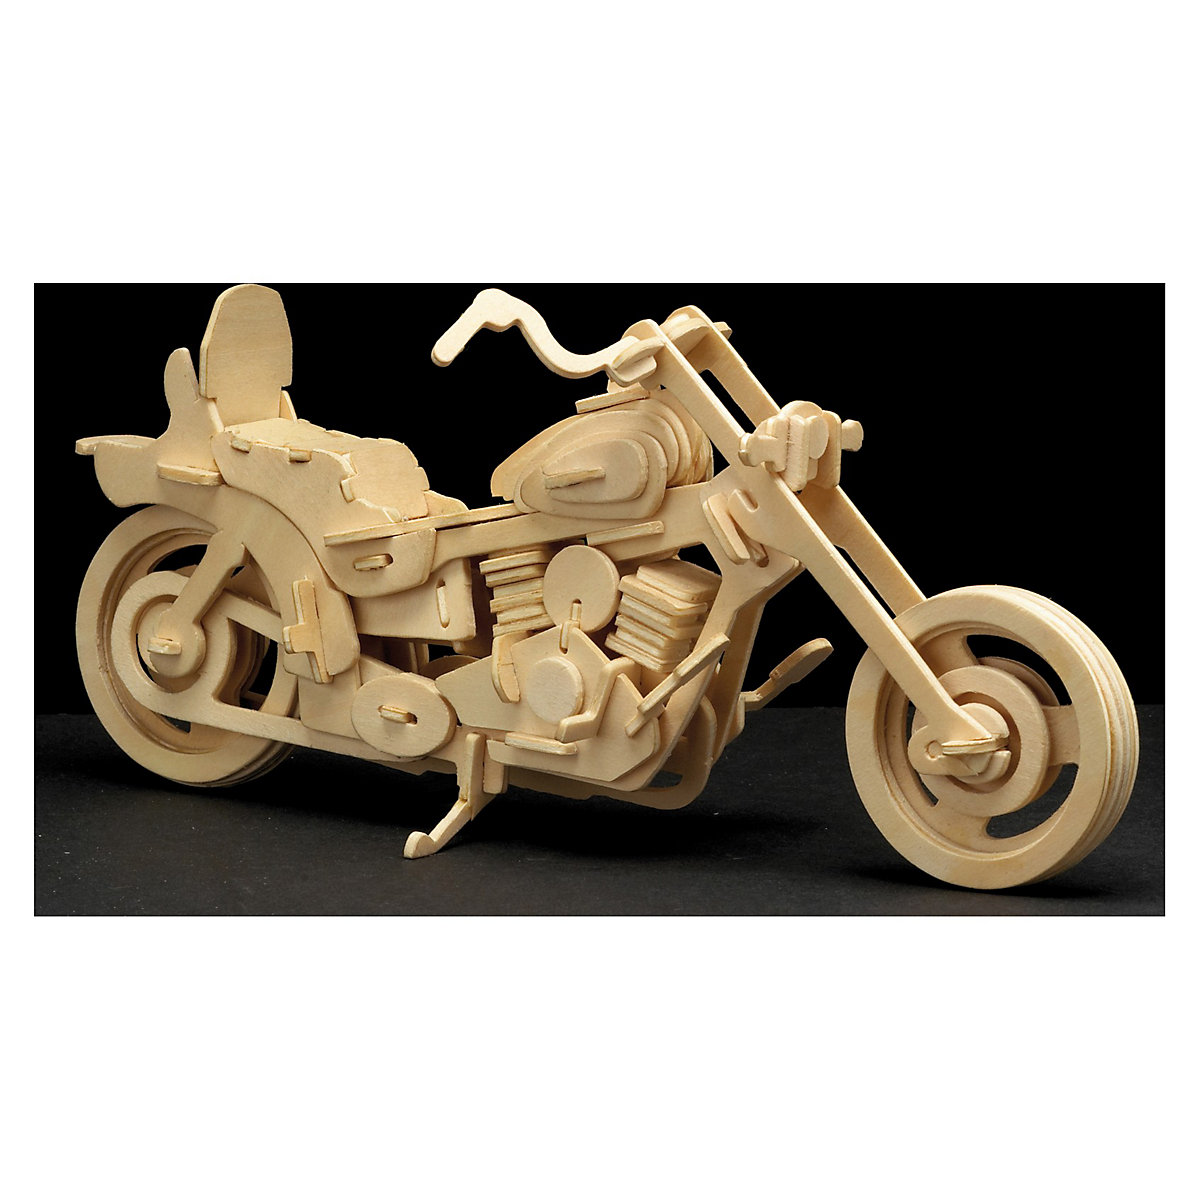 Holzbausatz-Set Harley Davidson, Formel 1 Rennwagen und Motorrad